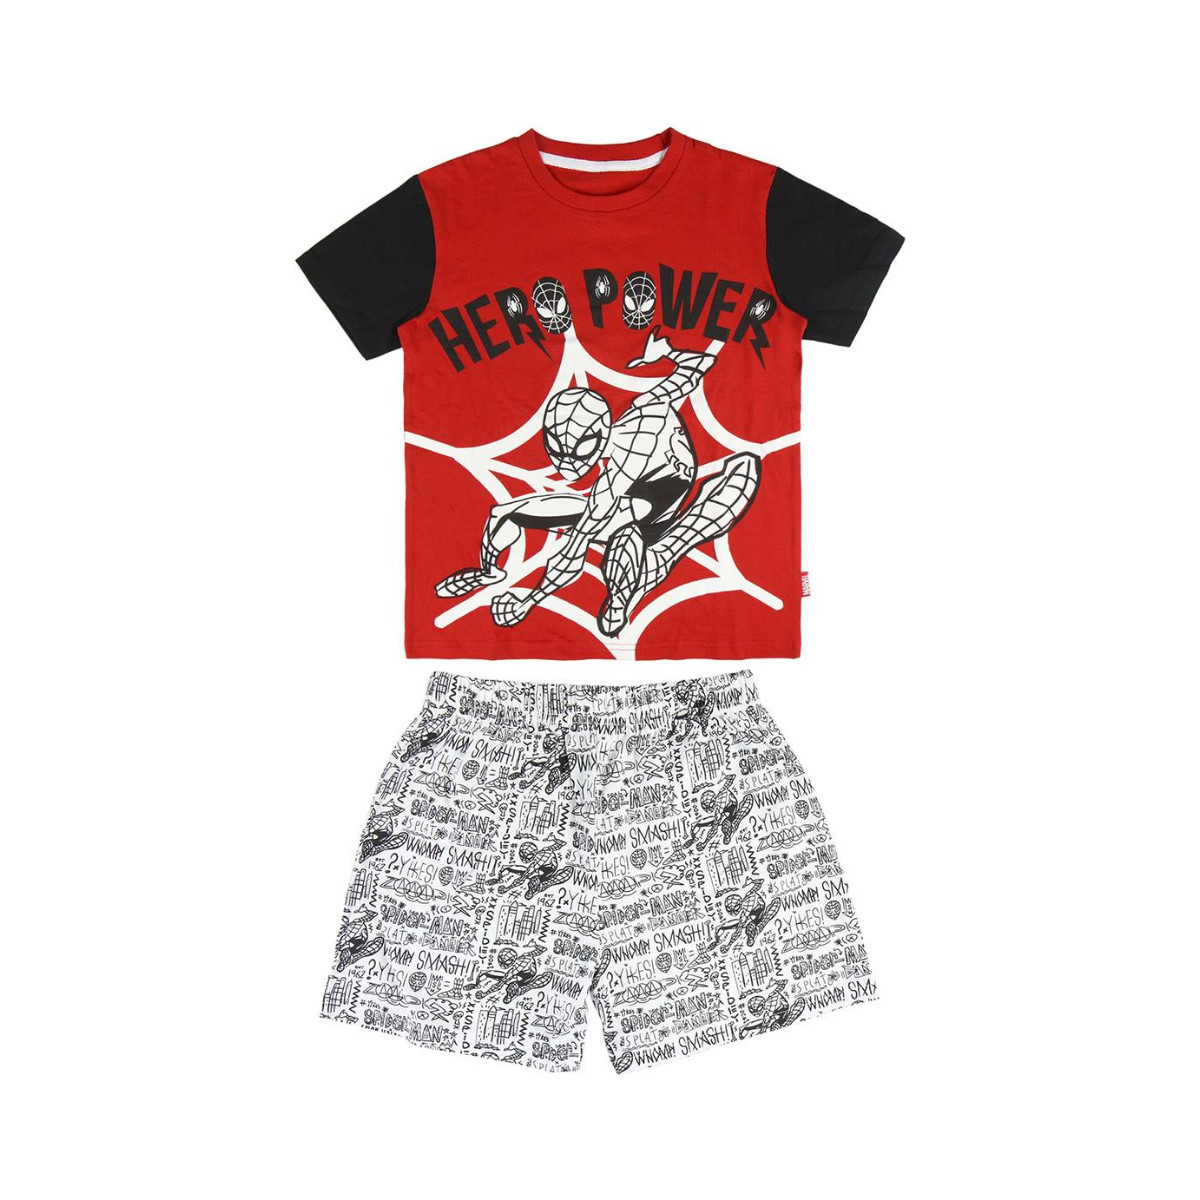 Textil Rapaz Pijamas / Camisas de dormir Marvel 2200005239 Vermelho